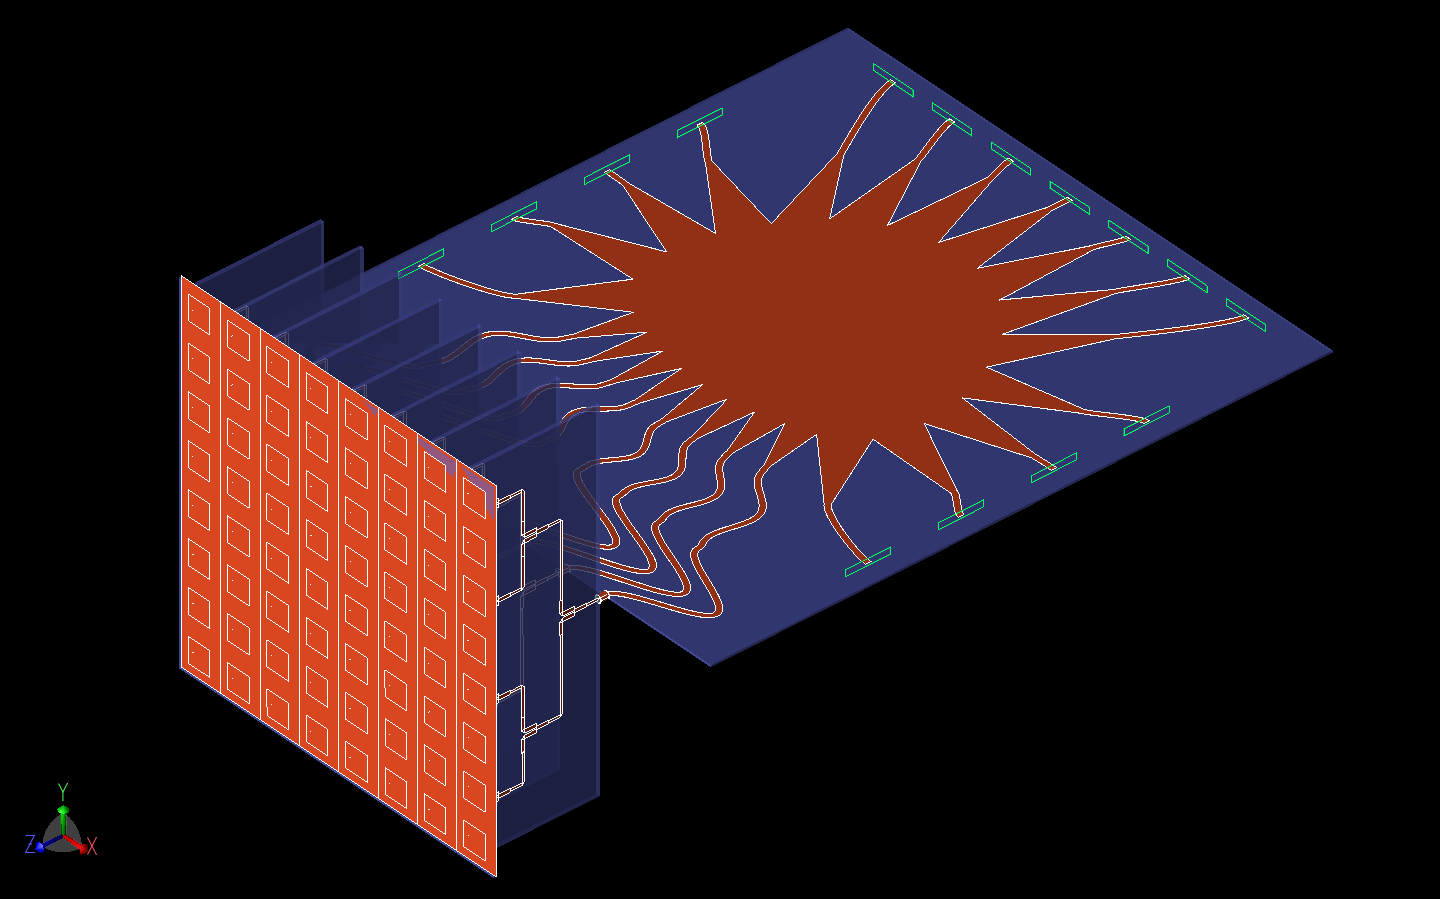 Figura 14: Aquí se muestra el sistema completo de la entrada de la lente Rotman, la etapa divisora de potencia Wilkinson y el conjunto de antenas de parche 8x8 como un modelo CAD tridimensional.